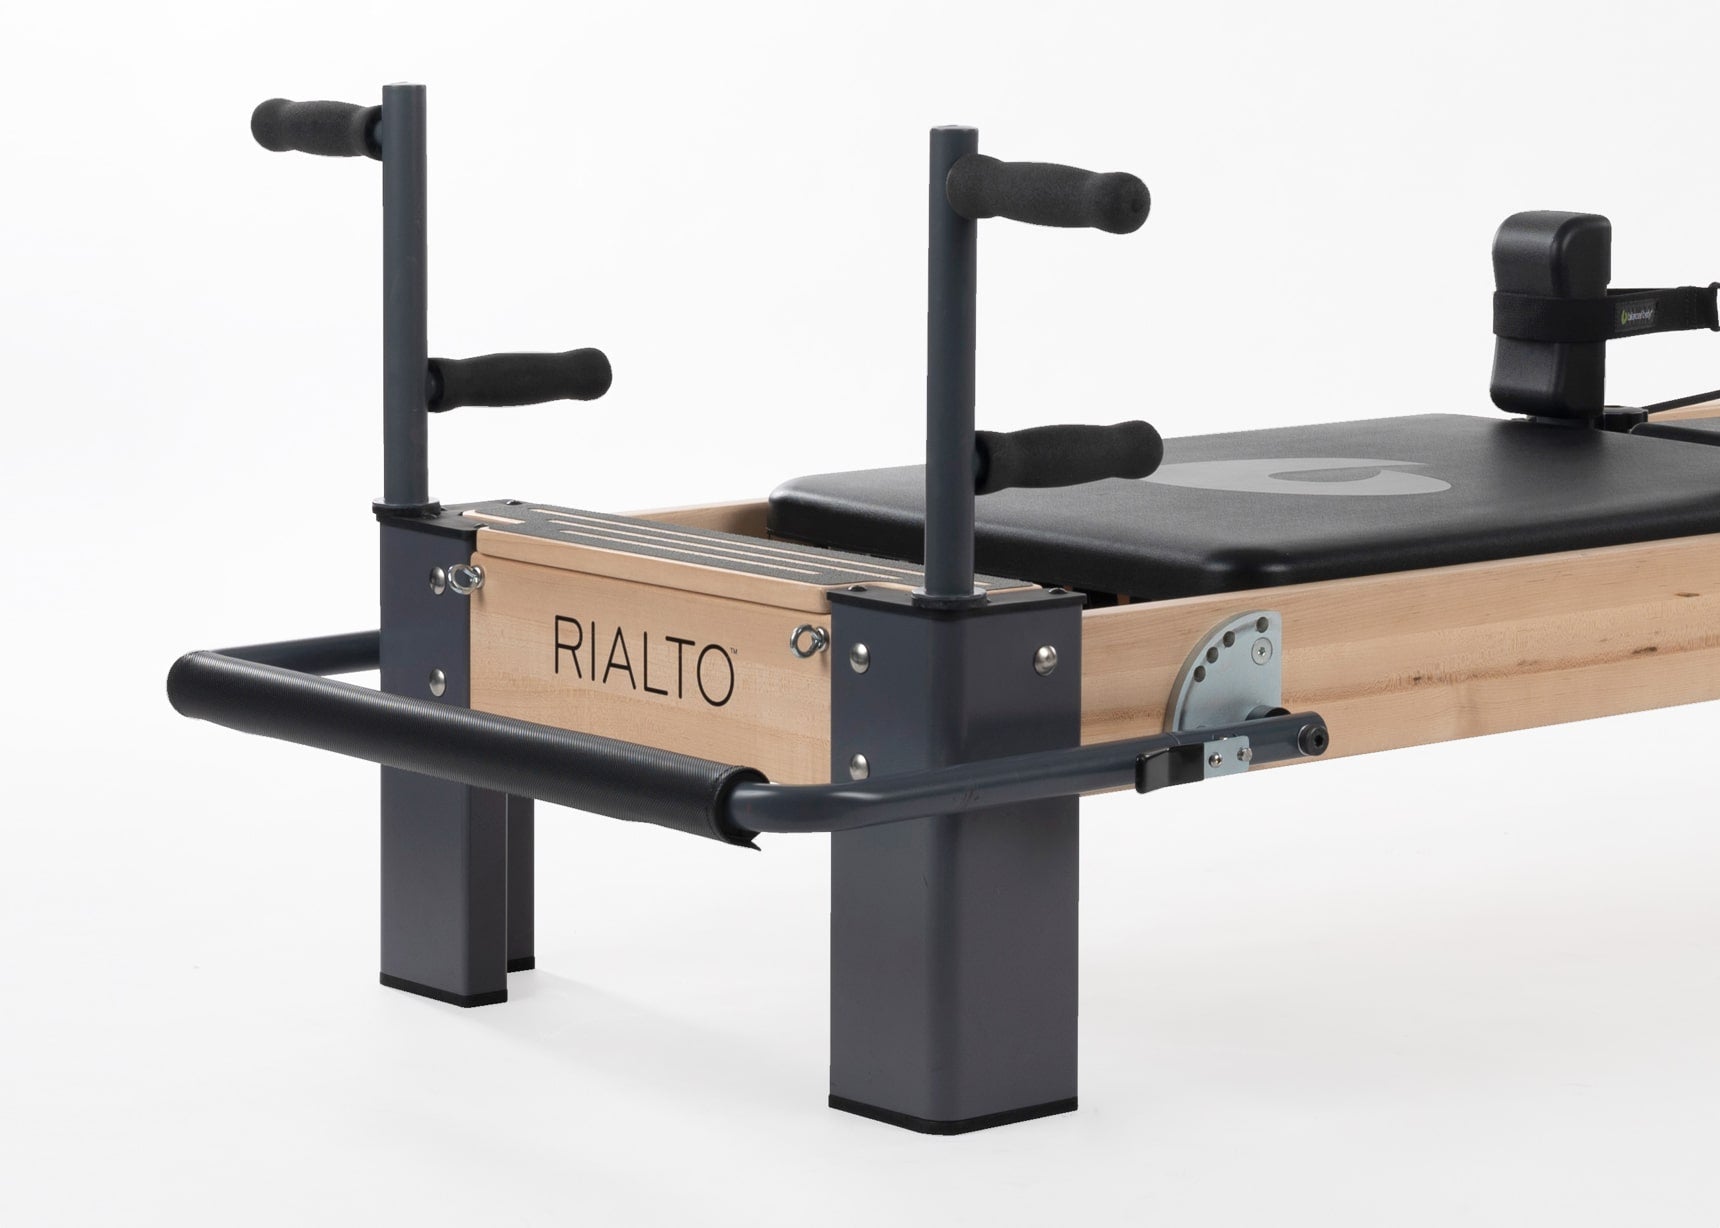 Rialto Pilates Reformer - Balanced Body Rialto Reformer